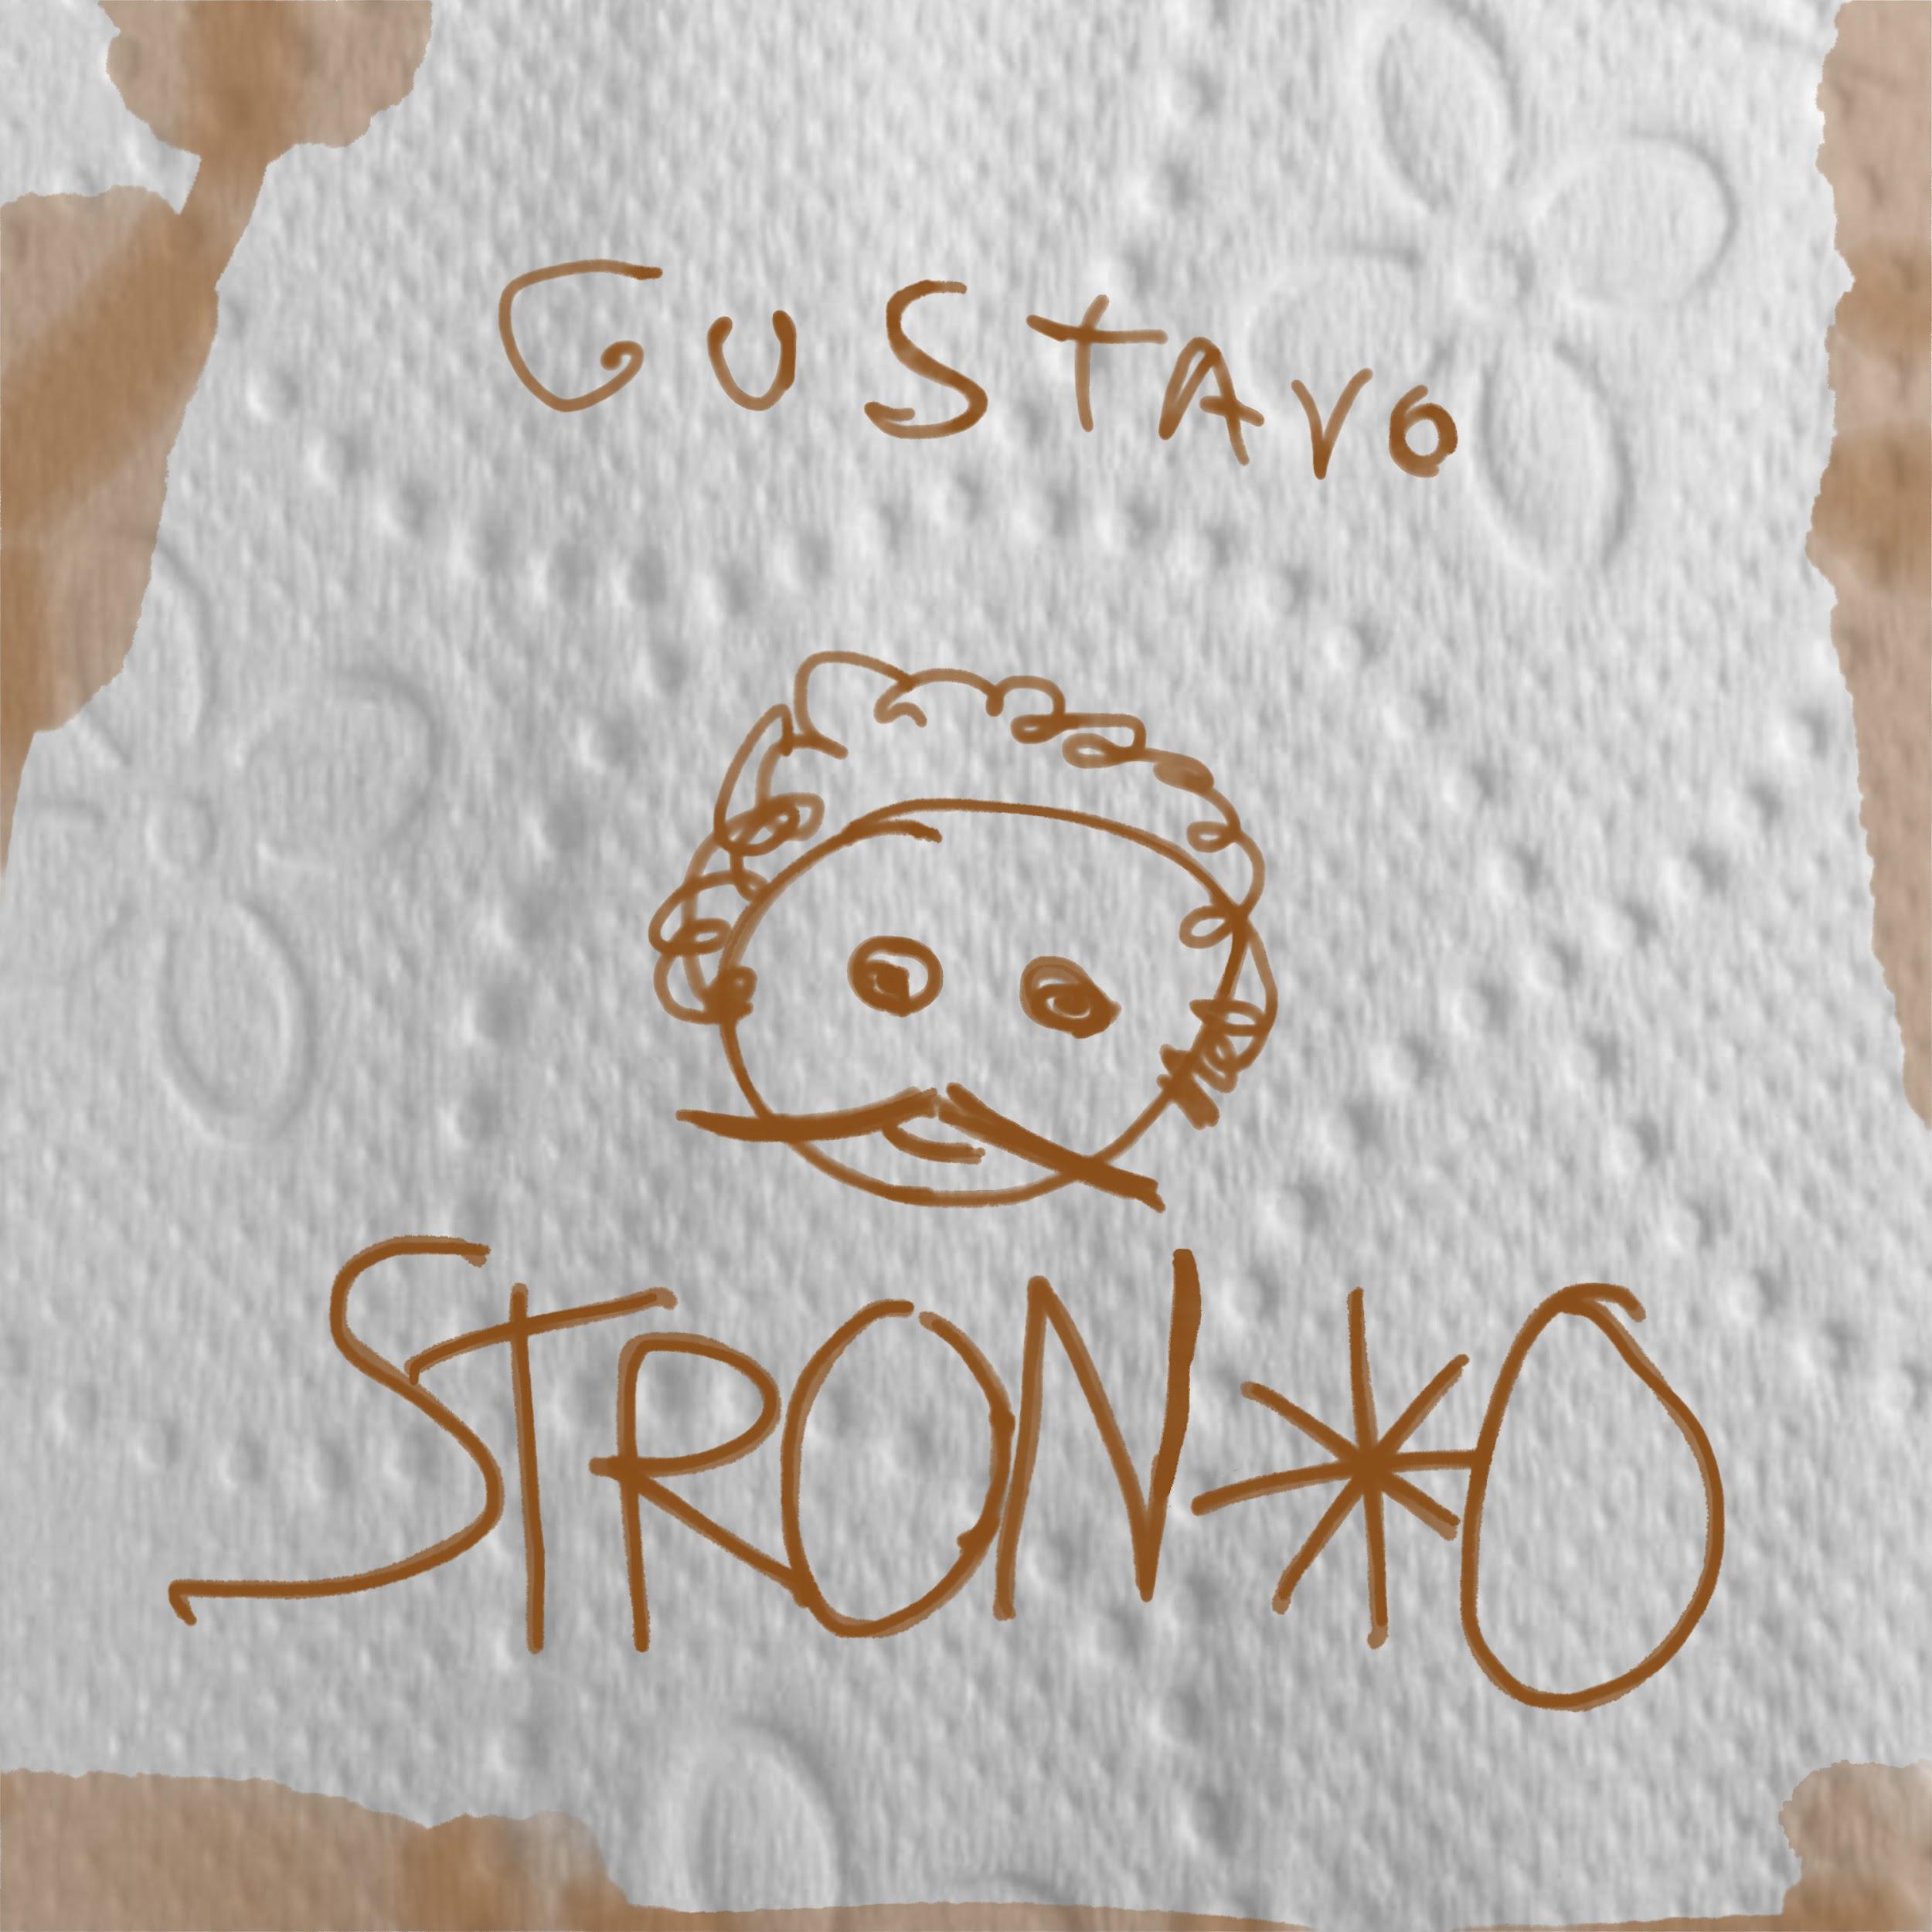 Gustavo pubblica “Stron*o, un disco autobiografico”